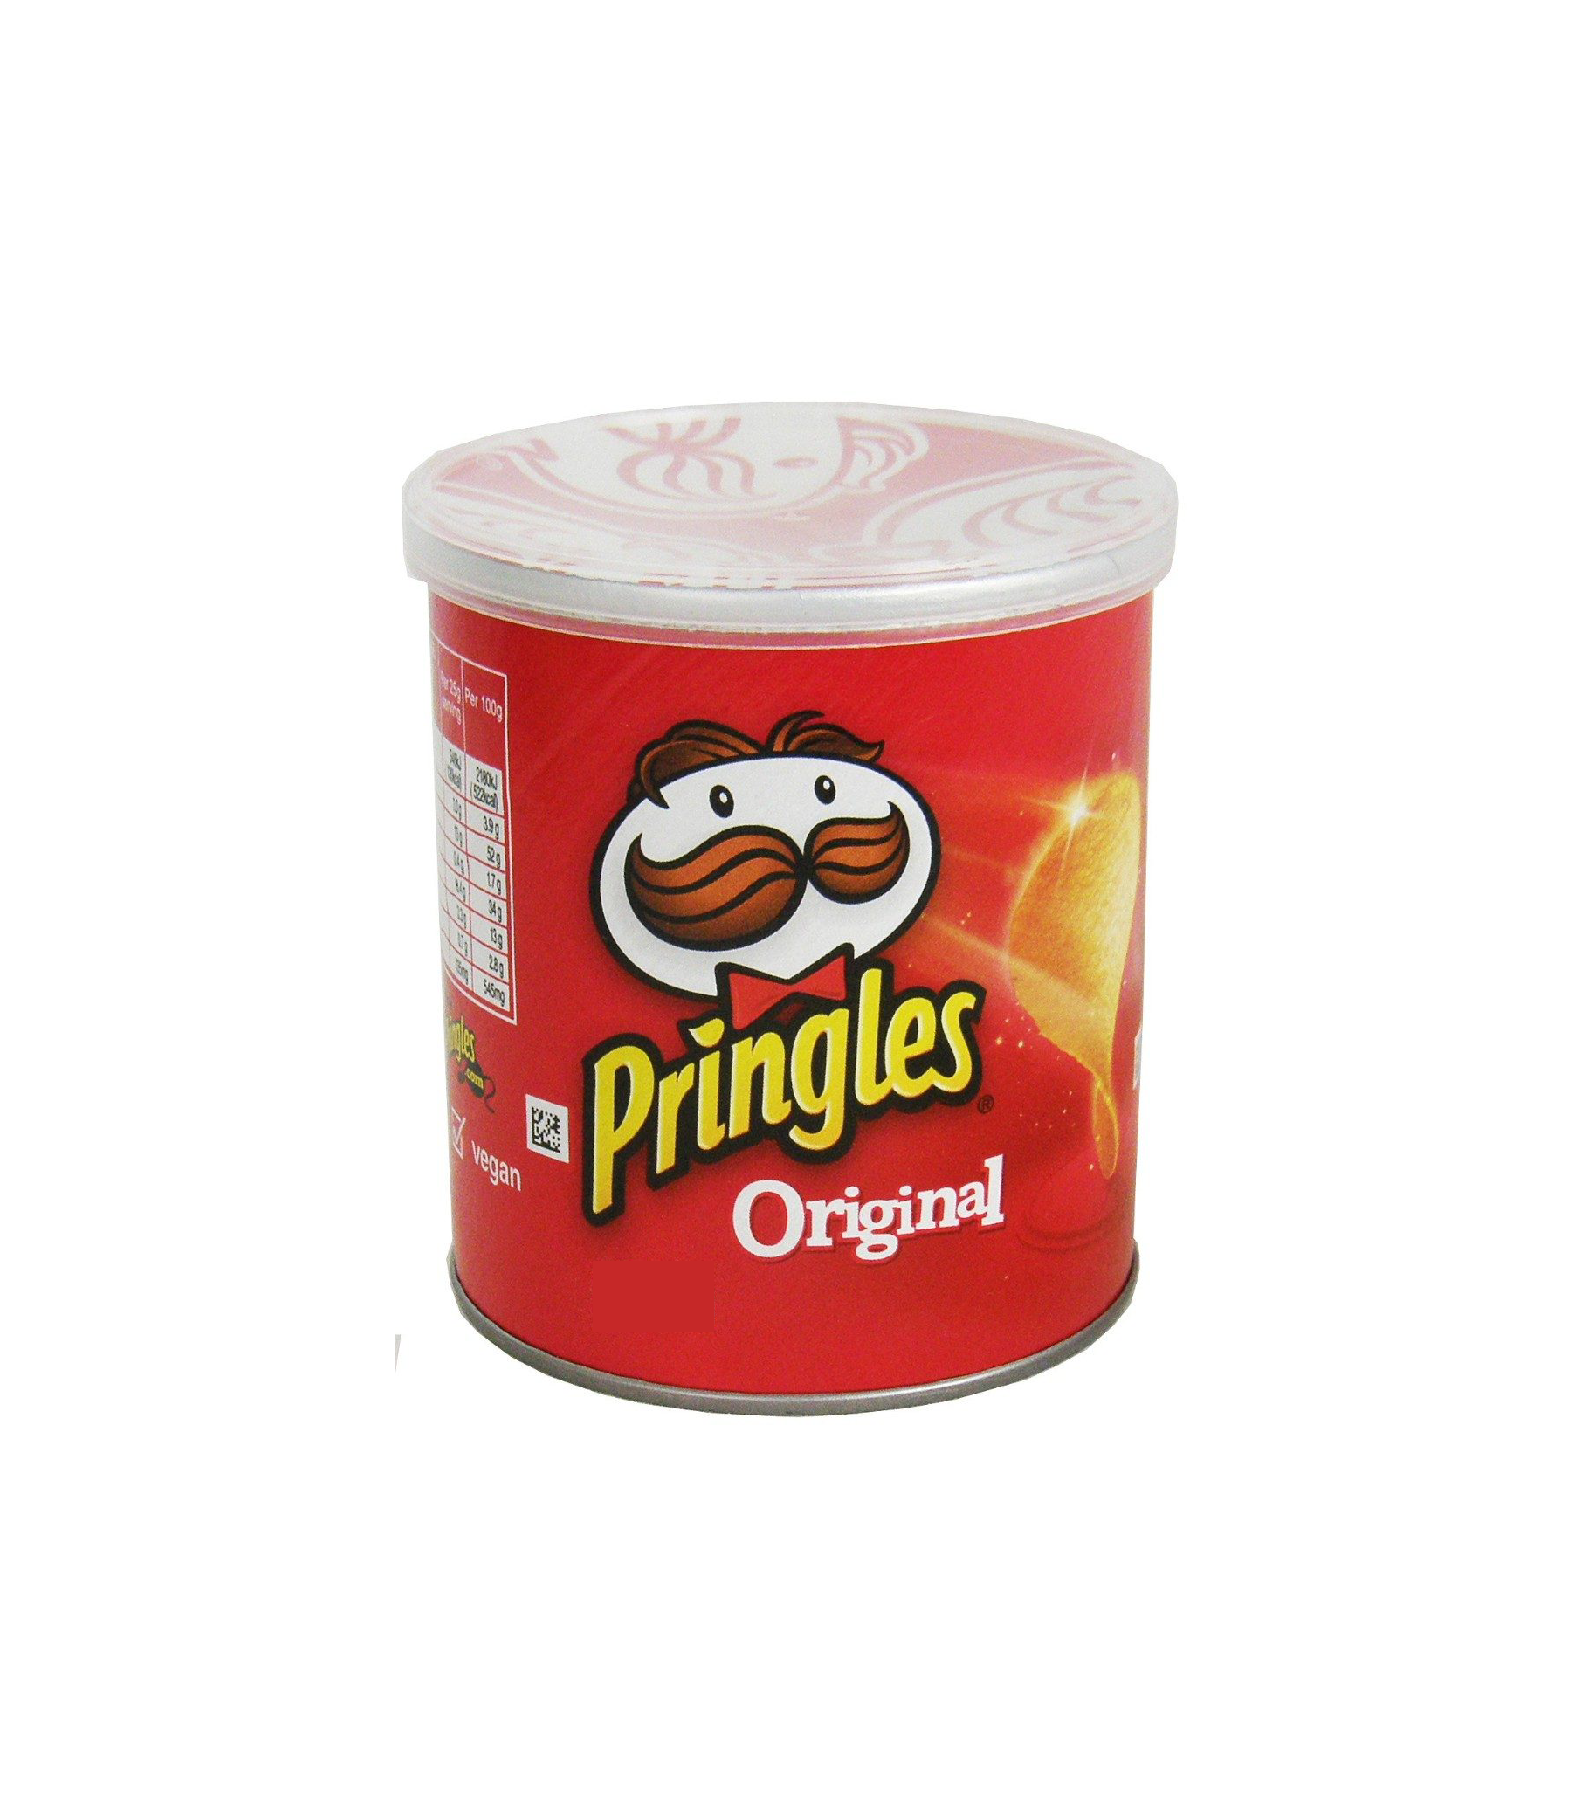 Pringles - Original - Web-01.png